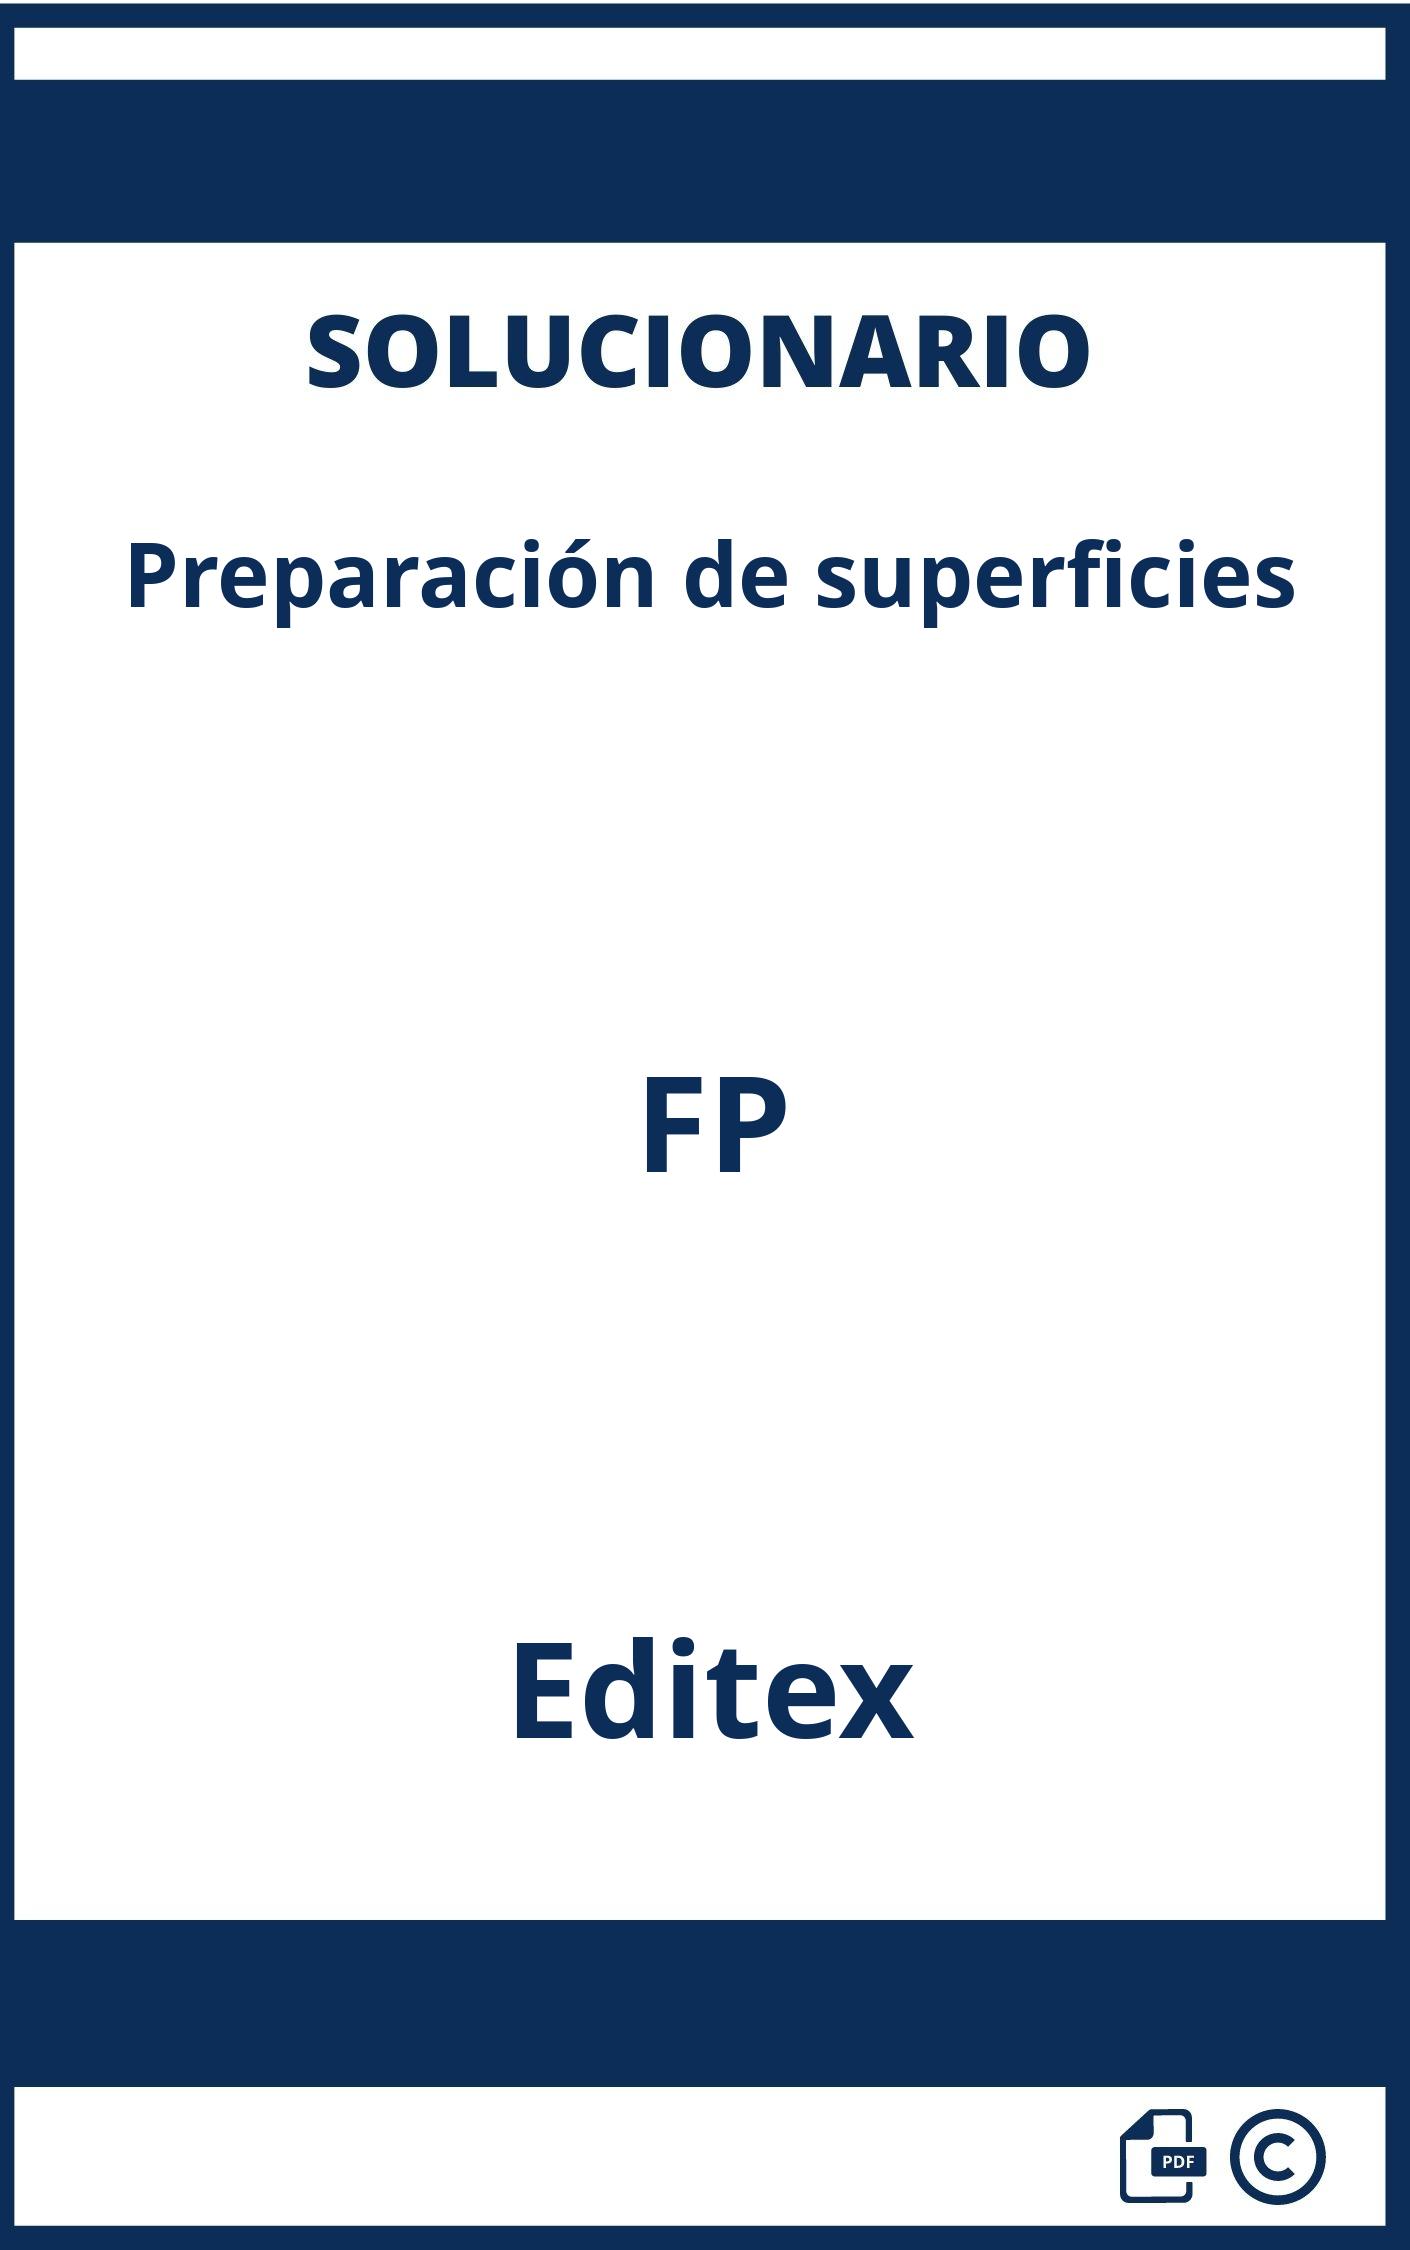 Solucionario Preparación de superficies FP Editex